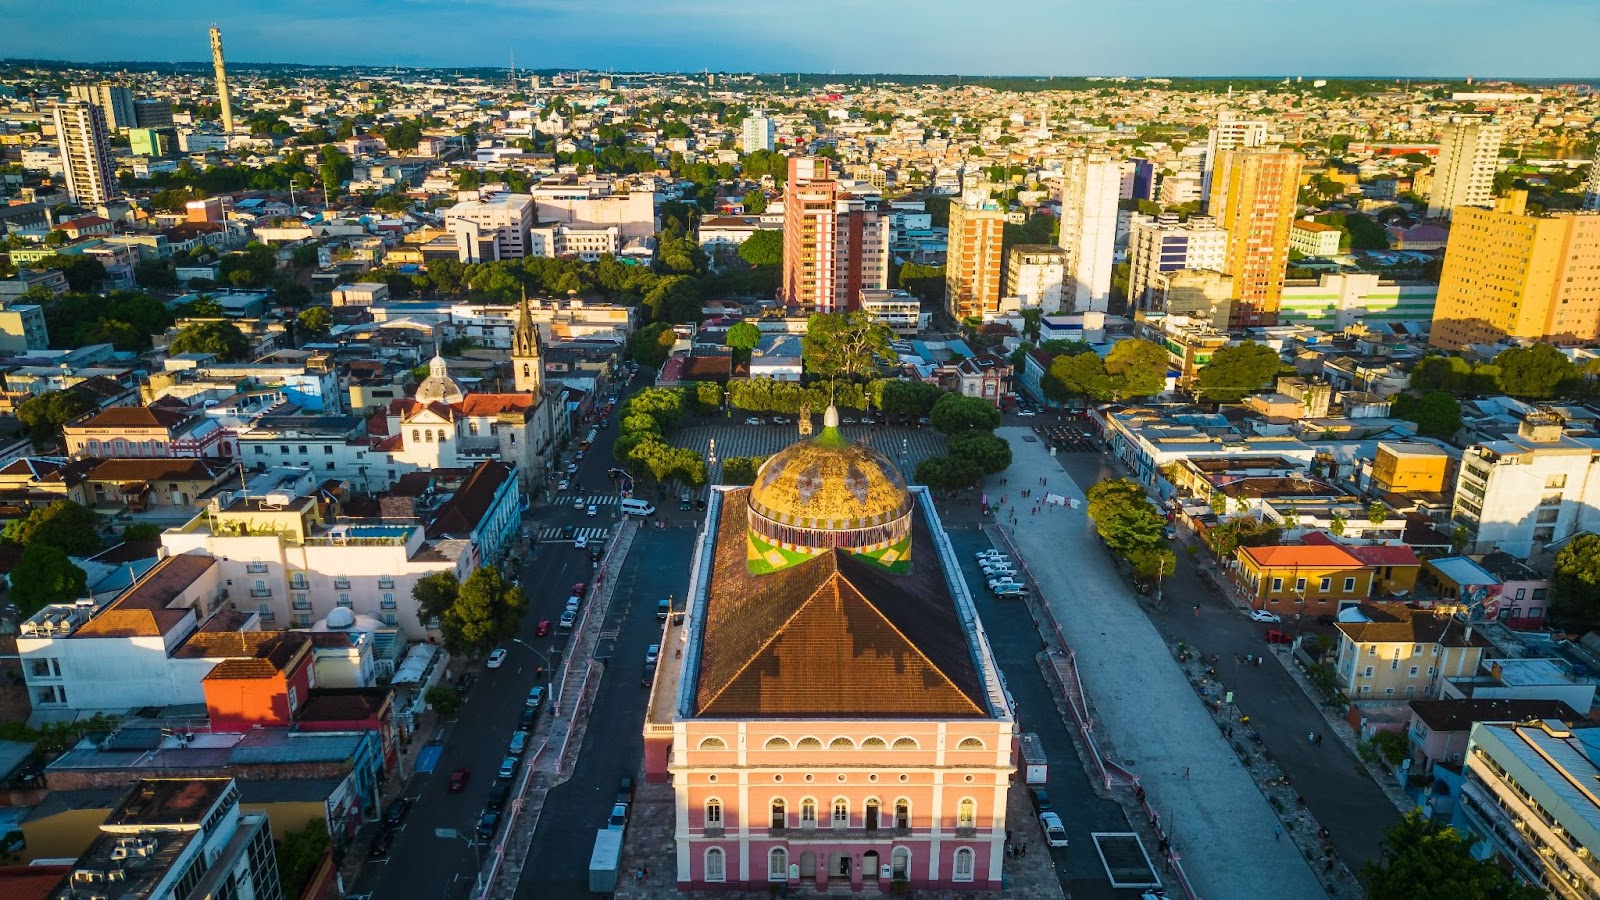 Vista aérea panorâmica da cidade de Manaus ao entardecer. Diversos prédios pelas ruas arborizadas.